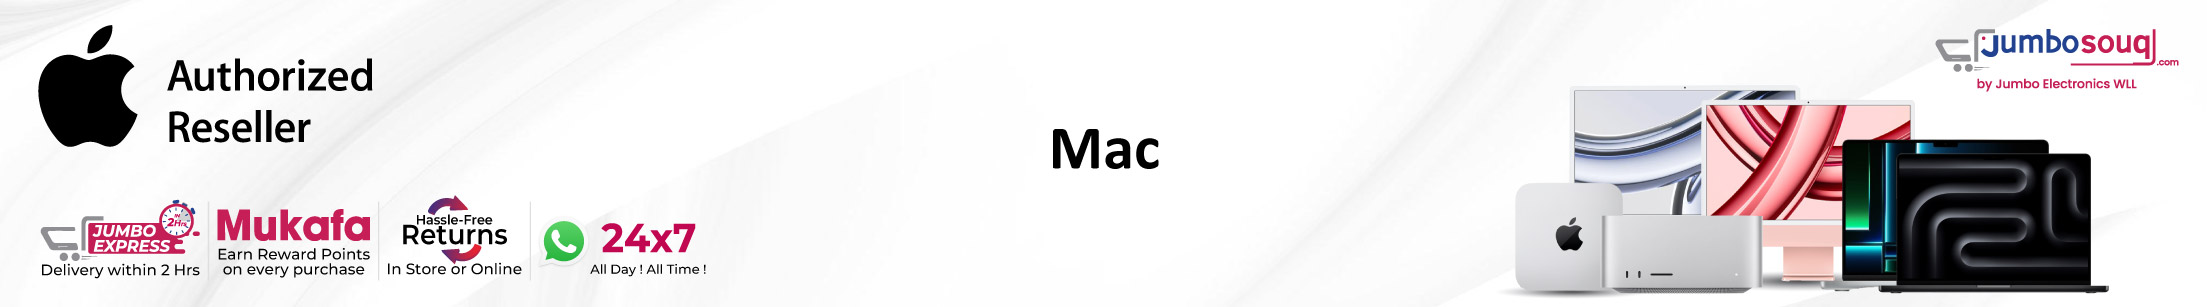 All Mac